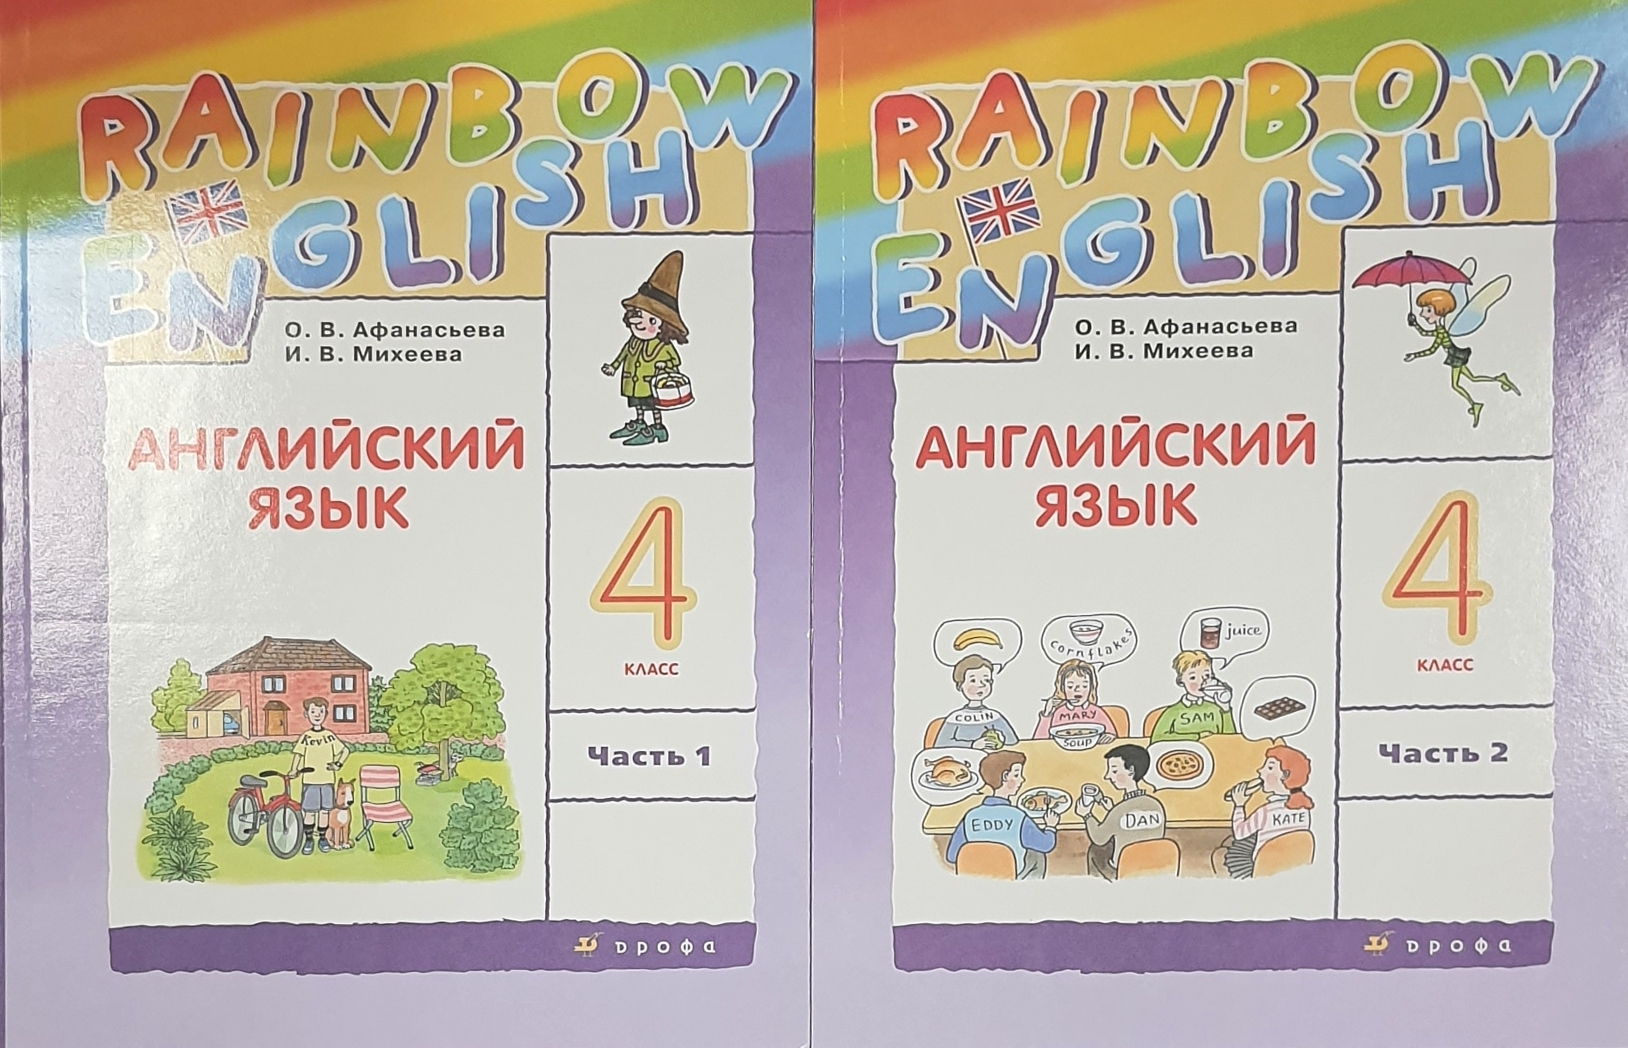 Rainbow student s book